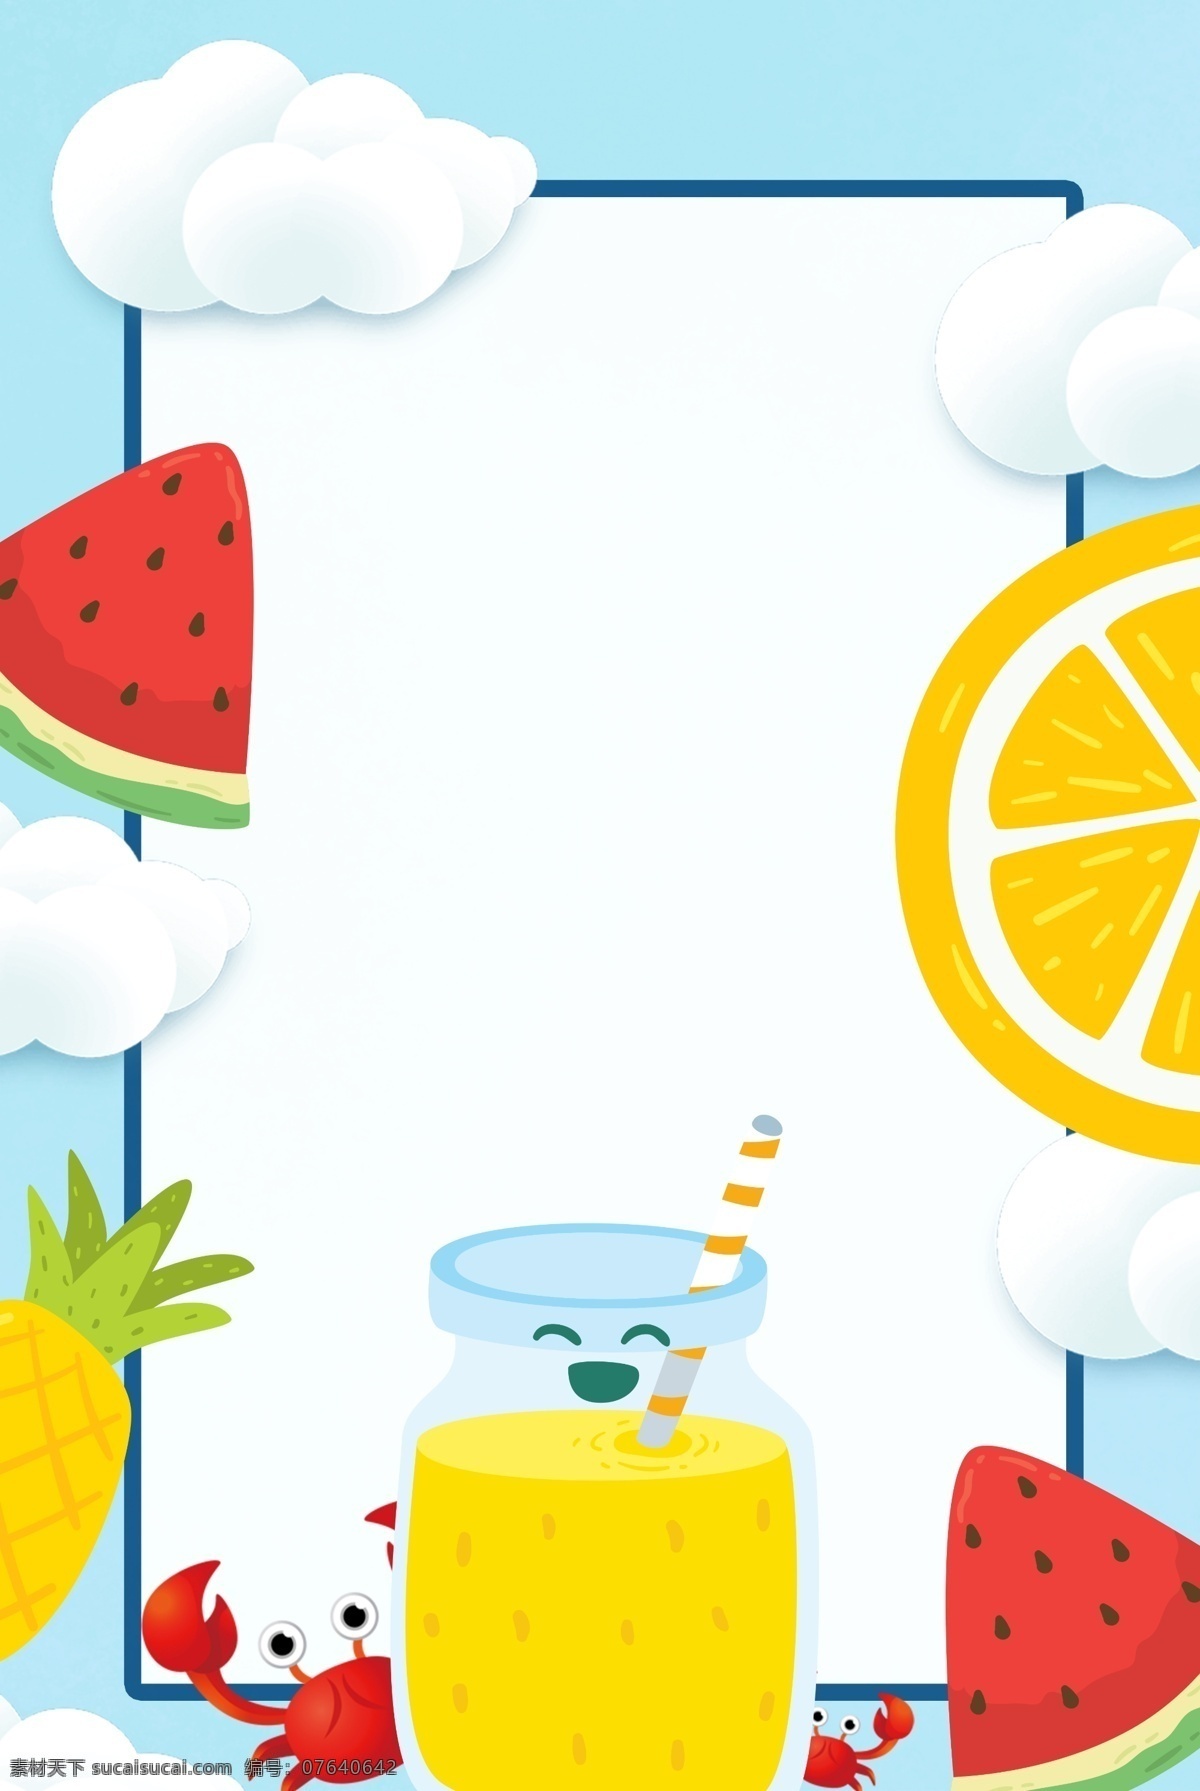 夏季 美味 水果 果汁 背景 凉爽的 美味的 假期 卡通 夏天 庆典 杯子 橘子 橙汁 笑脸 菠萝